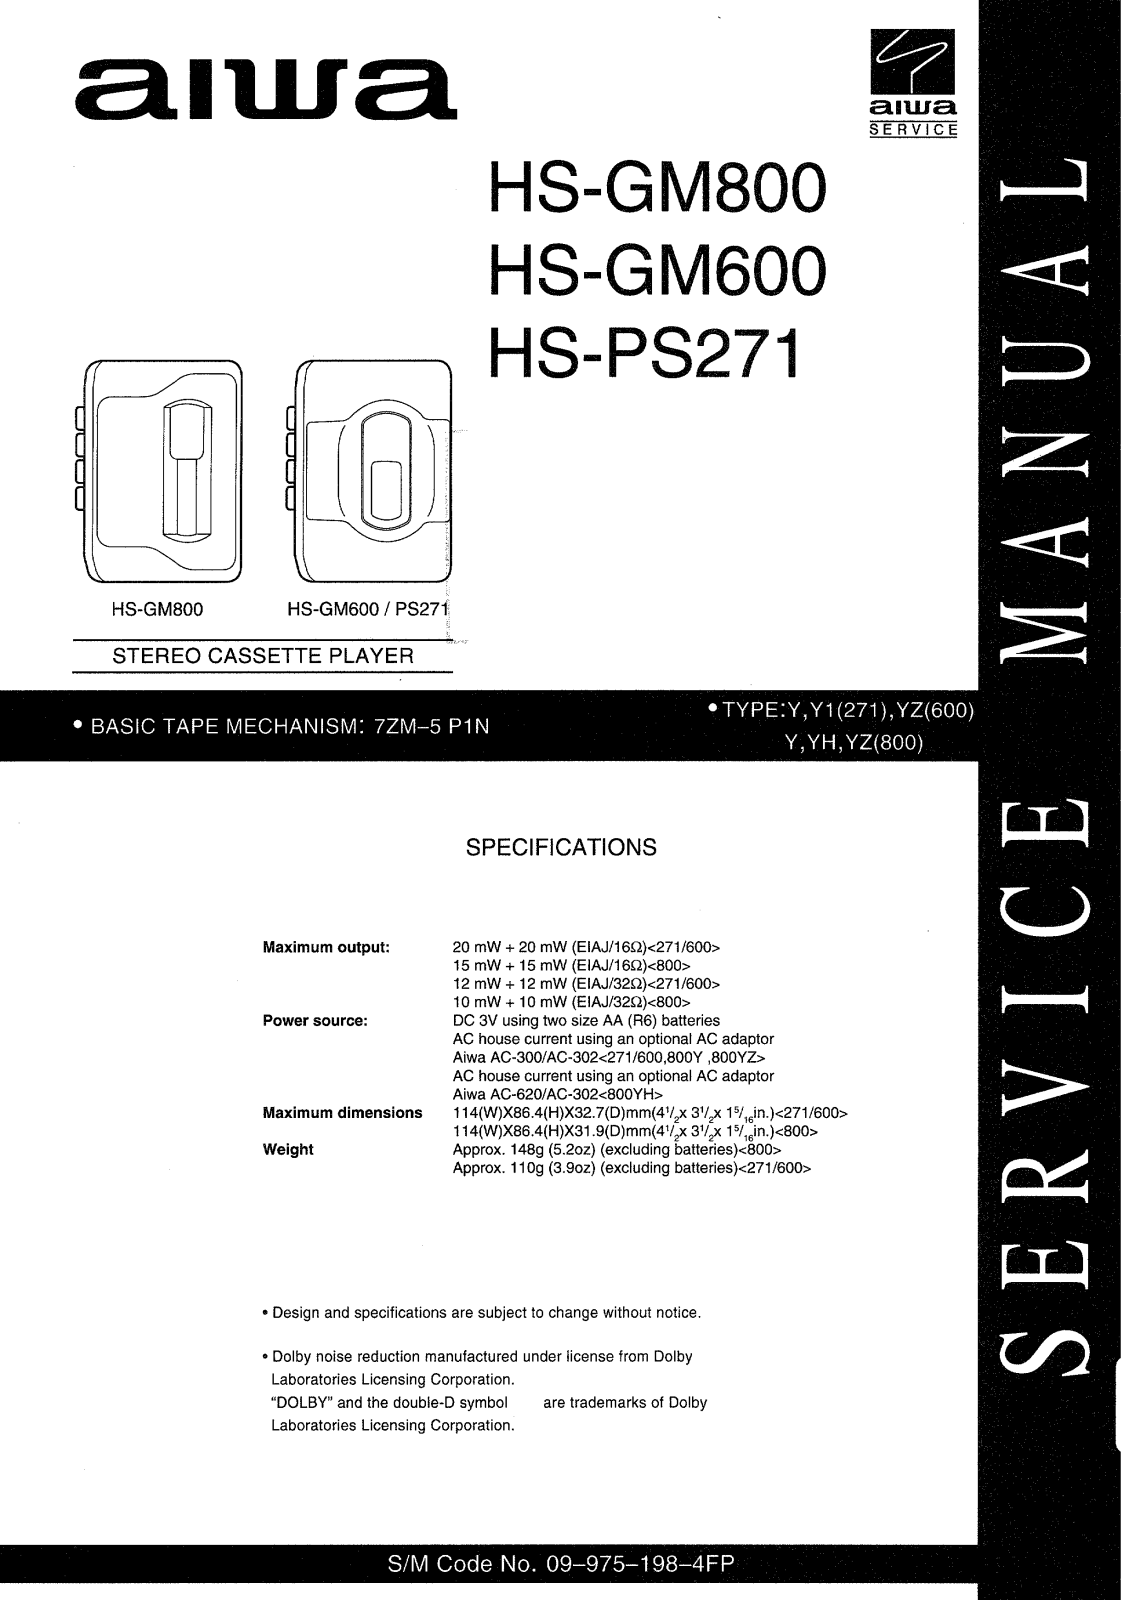 Aiwa HS-GM600, HS-GM800, HS-PS271 Service Manual